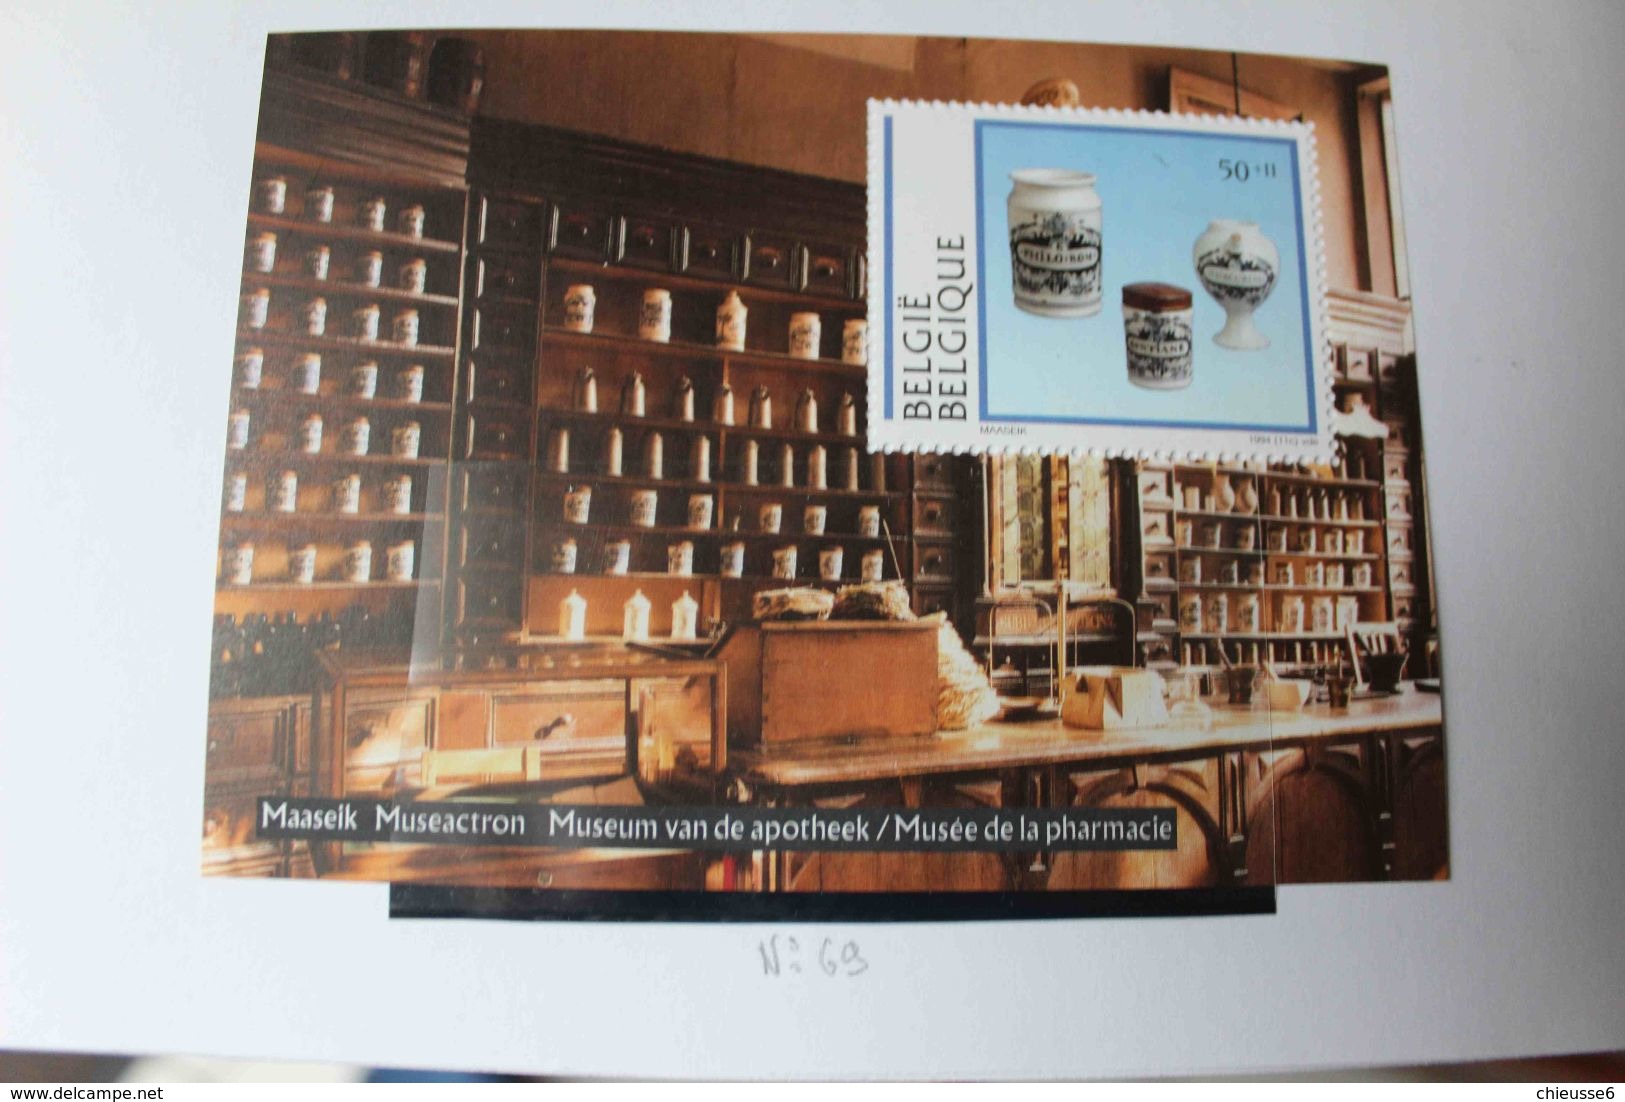 Belgique ** année 2000  timbres avec blocs et carnets